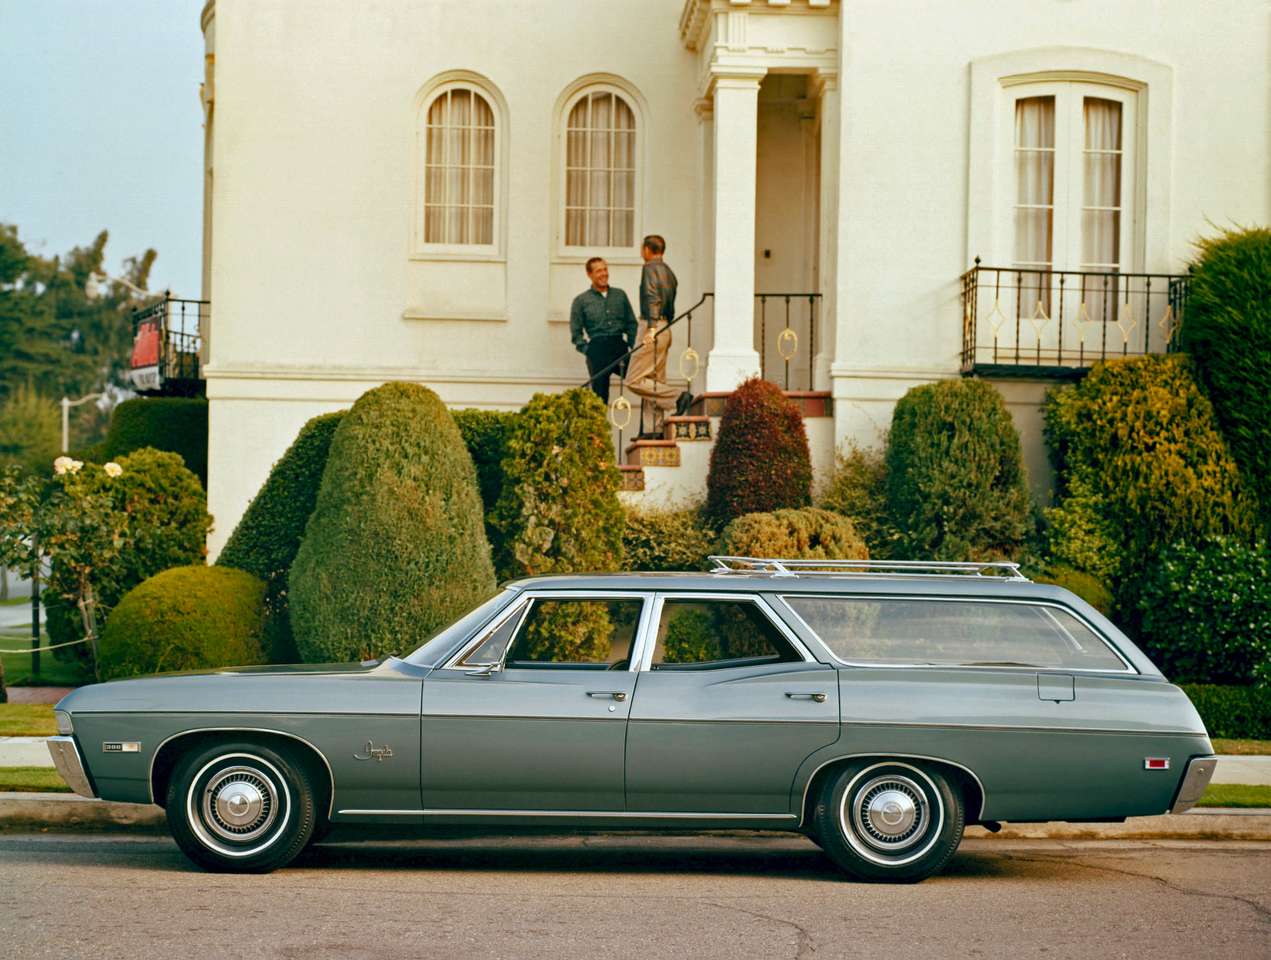 1968 Chevrolet Impala Station Wagon pussel på nätet